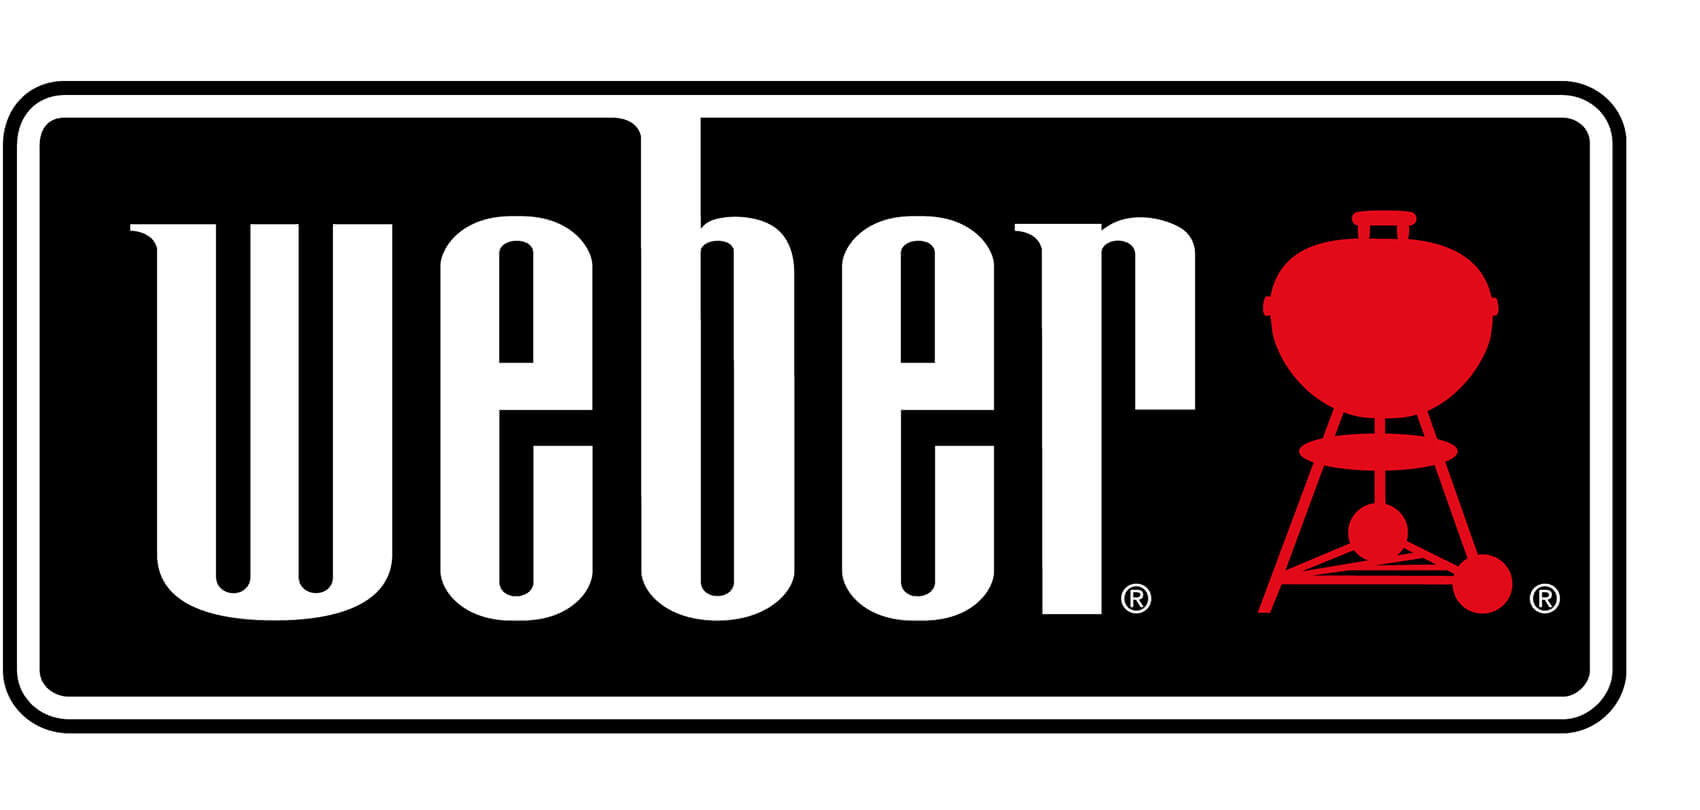 Weber Grill - Hersteller Webseite